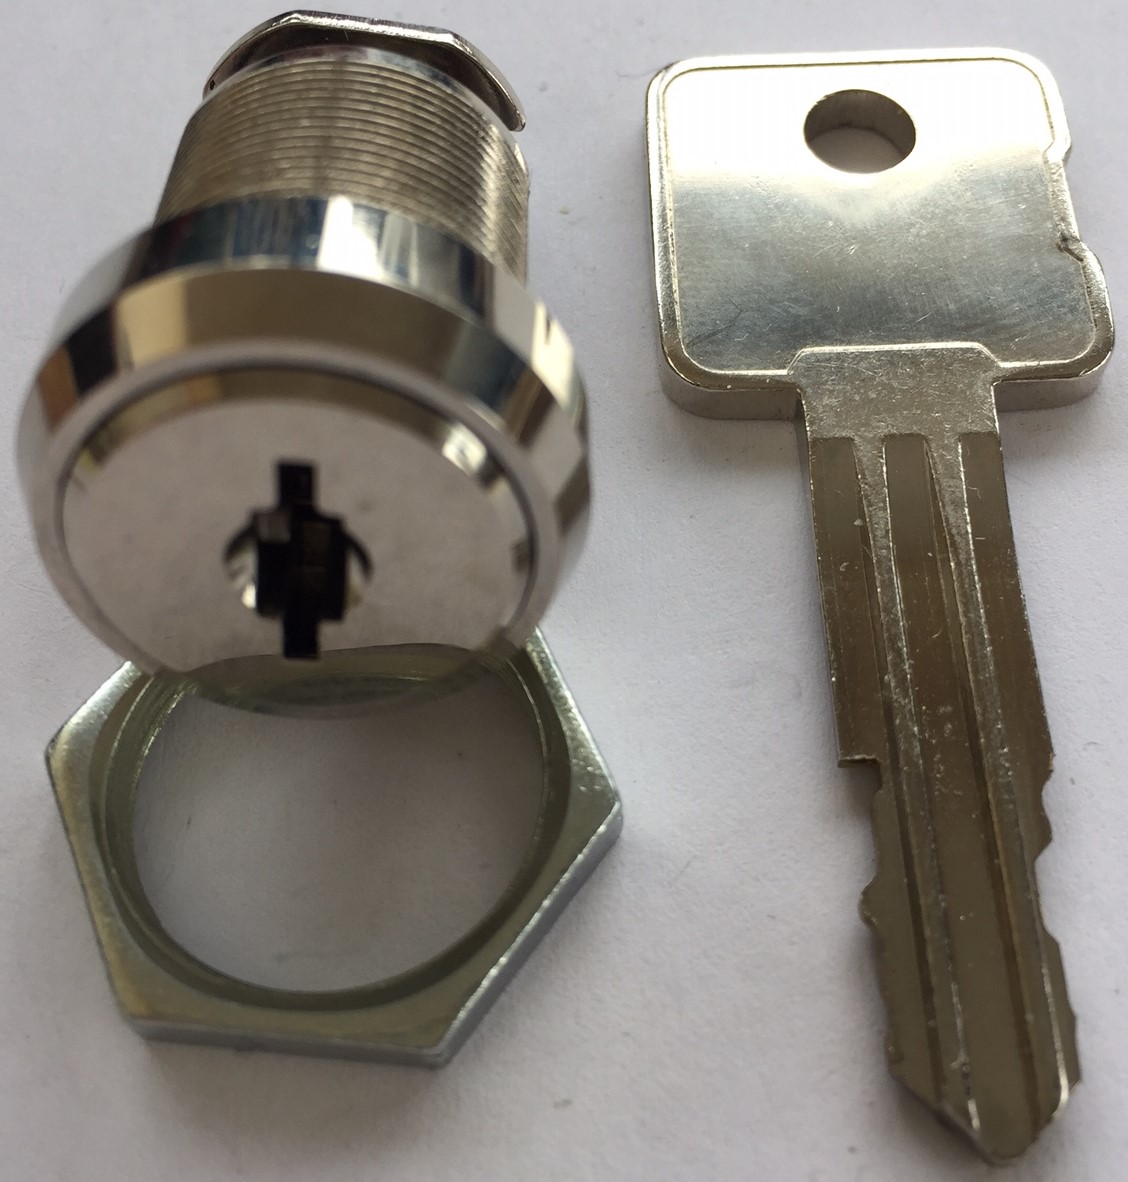 2-Keys for VM010 Bill Change Machine Key Code Series FR01-FR10 SafeCo Brands FR02 